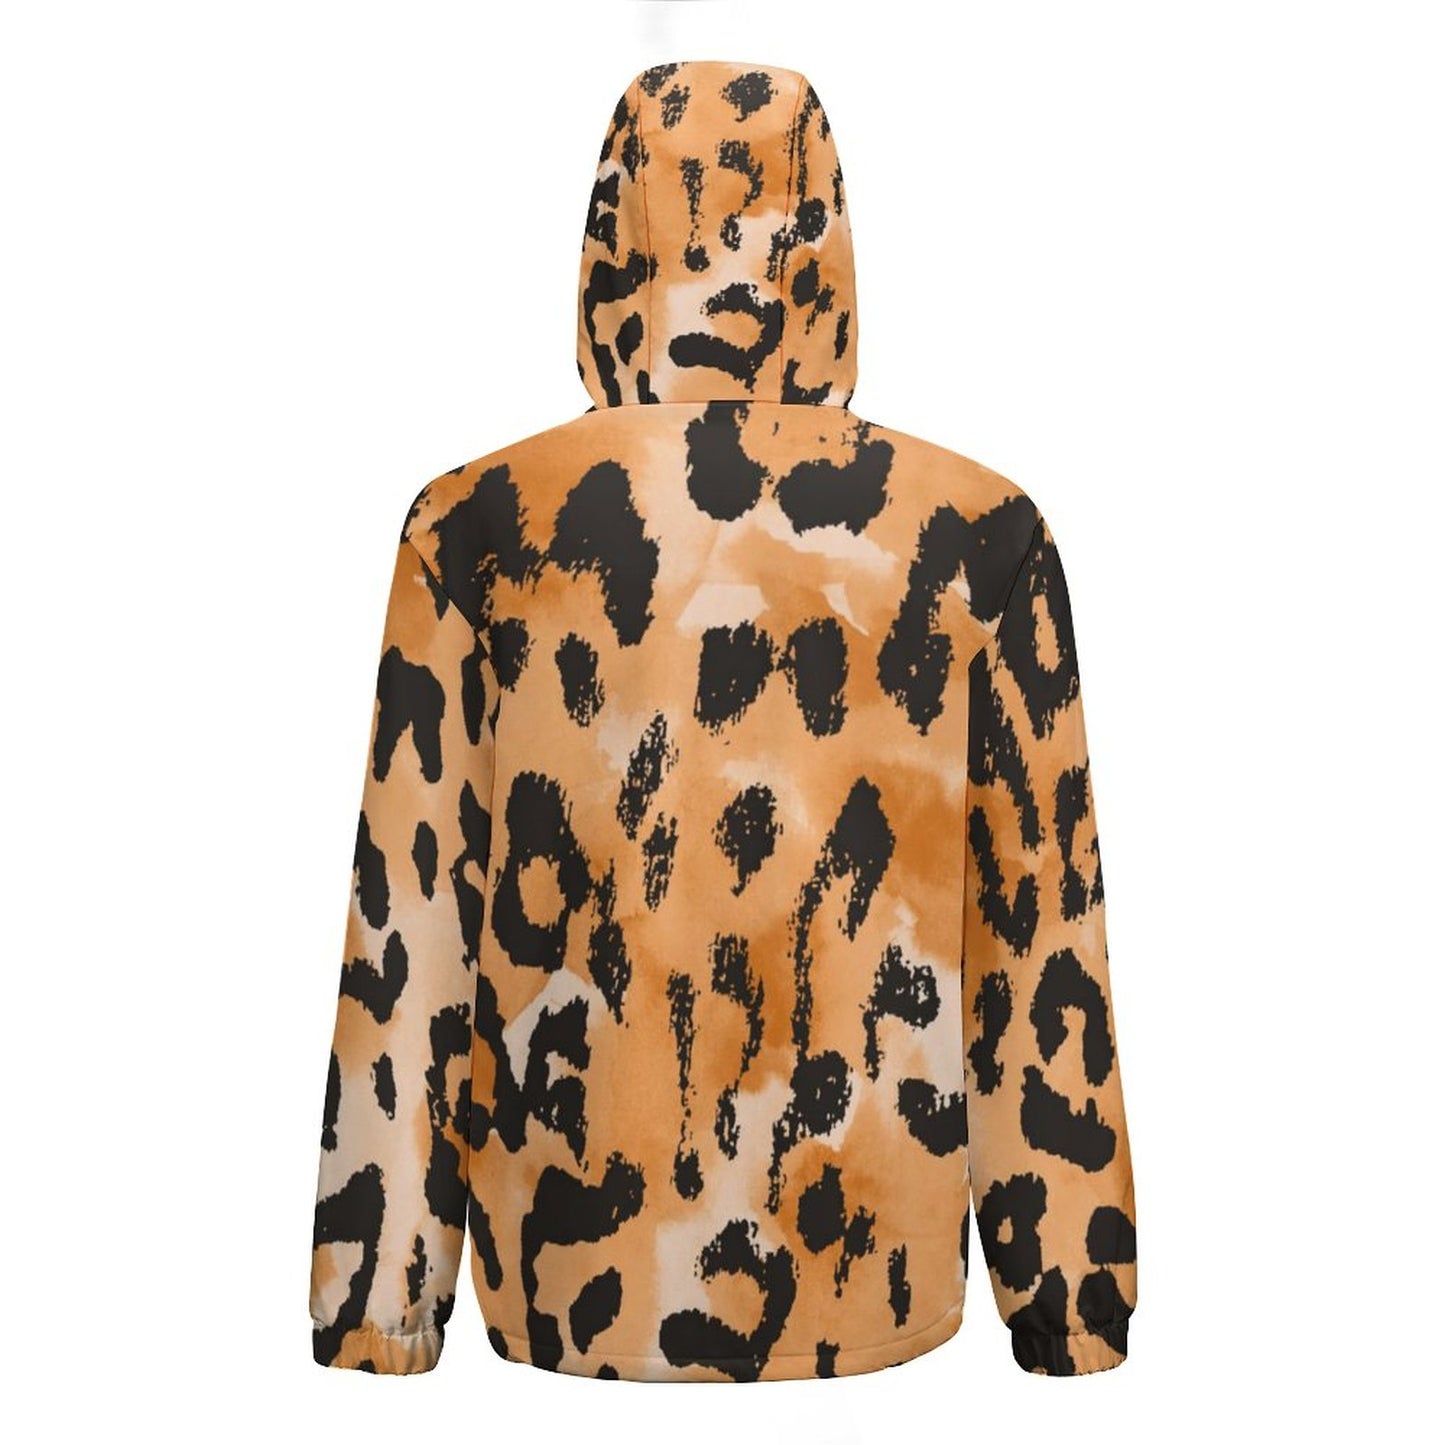 Online Custom Casual Wear for Women Women's Plush Short Jacket Leopard Print Girl